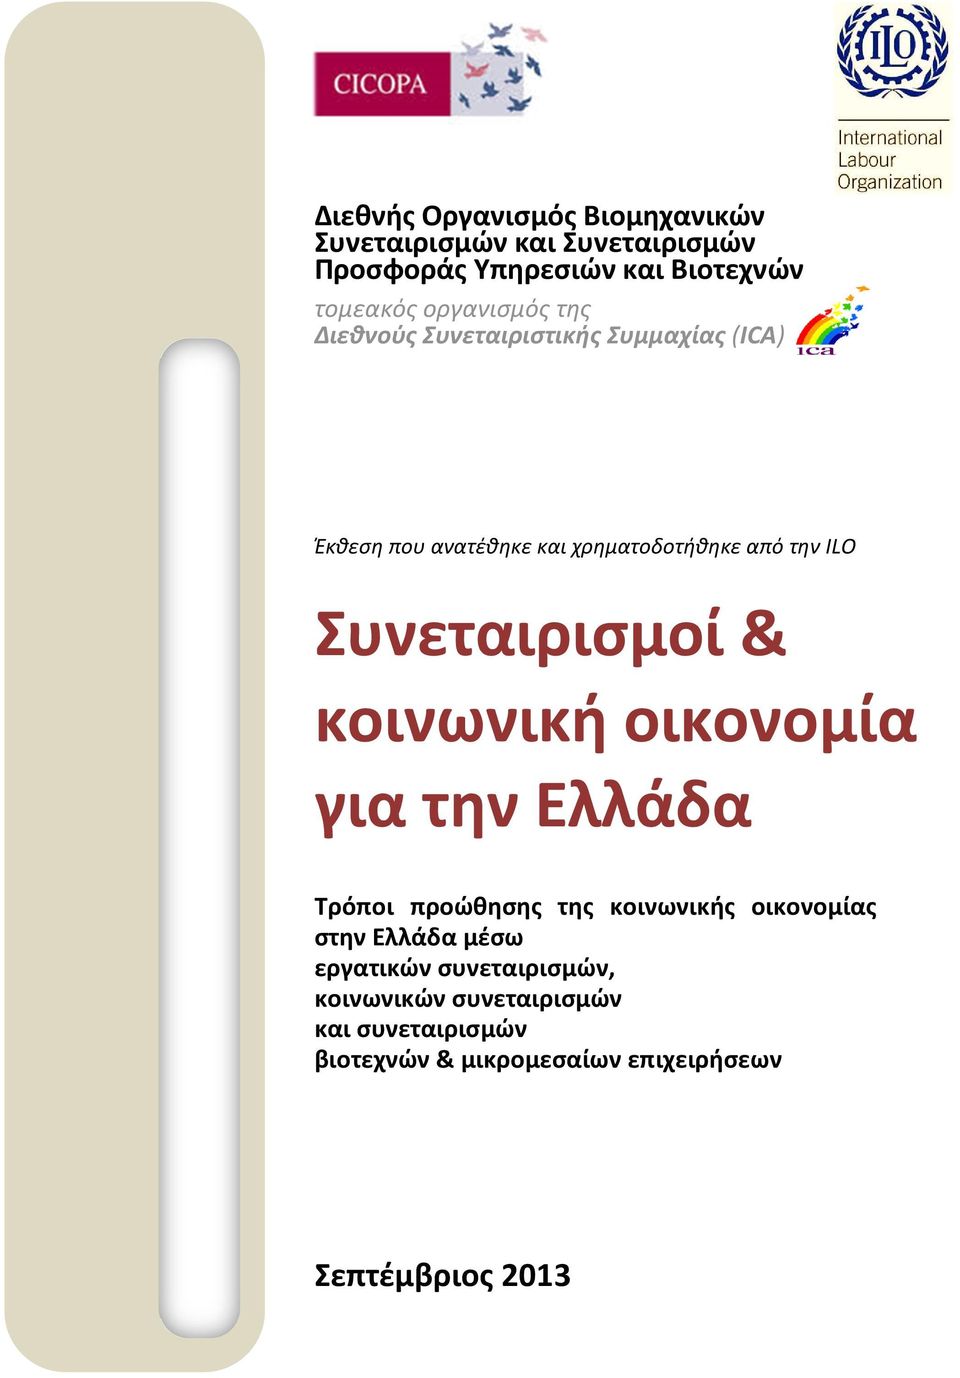 Συνεταιρισμοί & κοινωνική οικονομία για την Ελλάδα Τρόποι προώθησης της κοινωνικής οικονομίας στην Ελλάδα μέσω